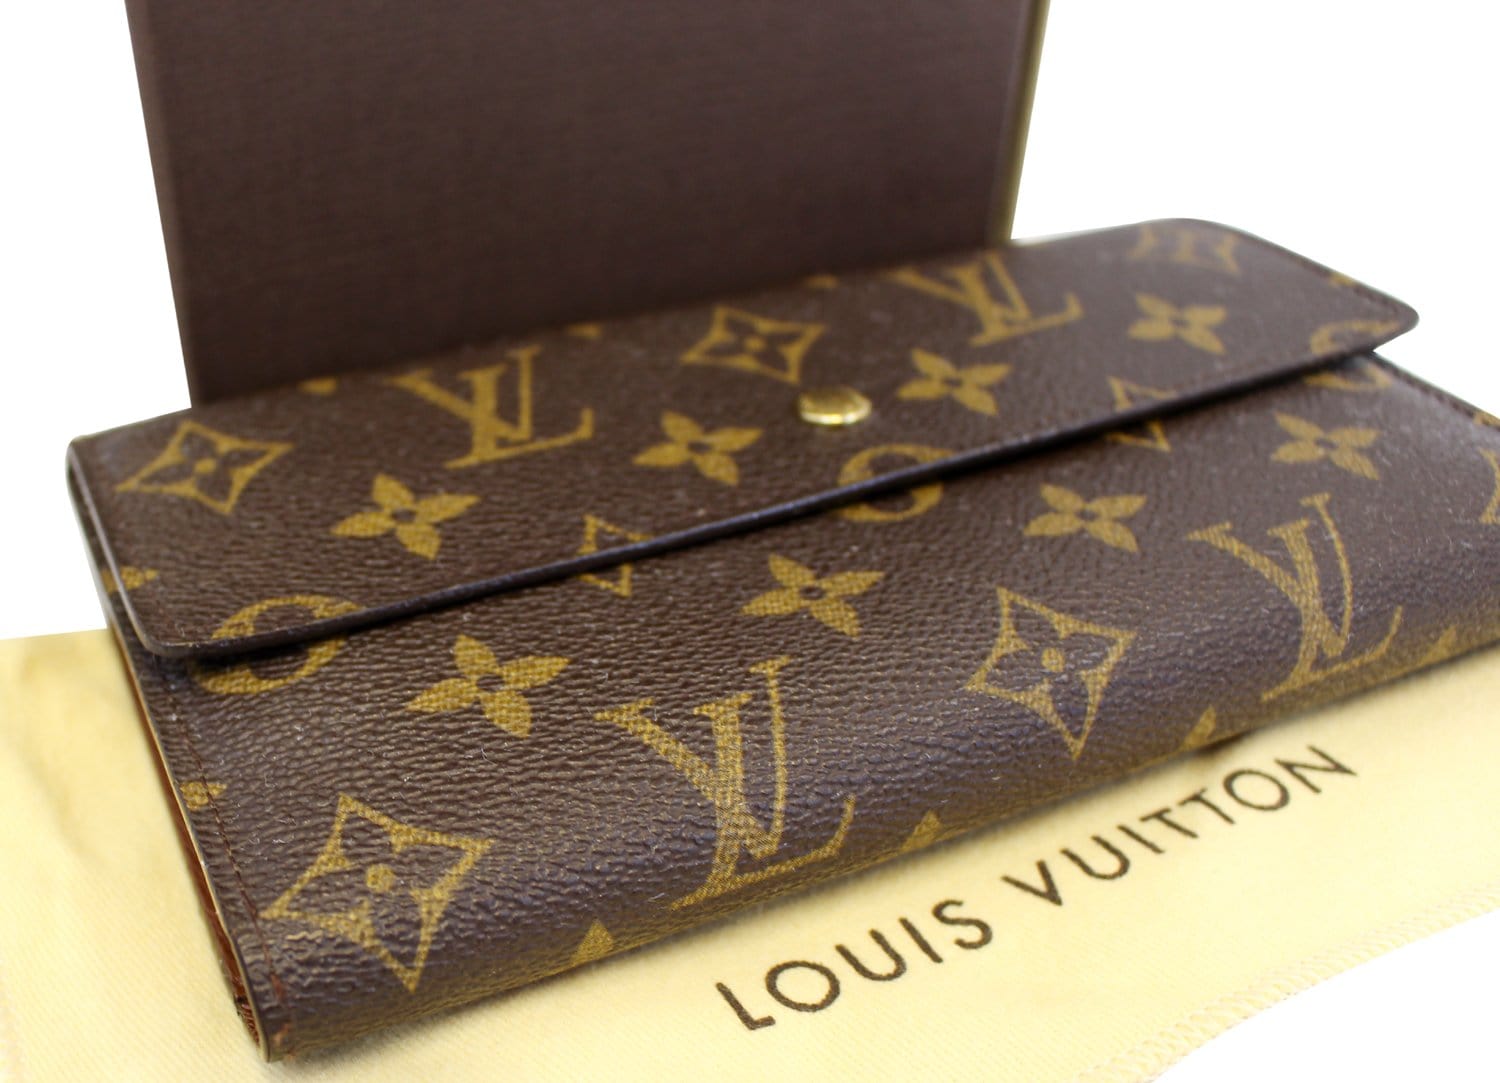 Louis Vuitton Damier Ebene Porte Tresor International Wallet – For The Love  of Luxury